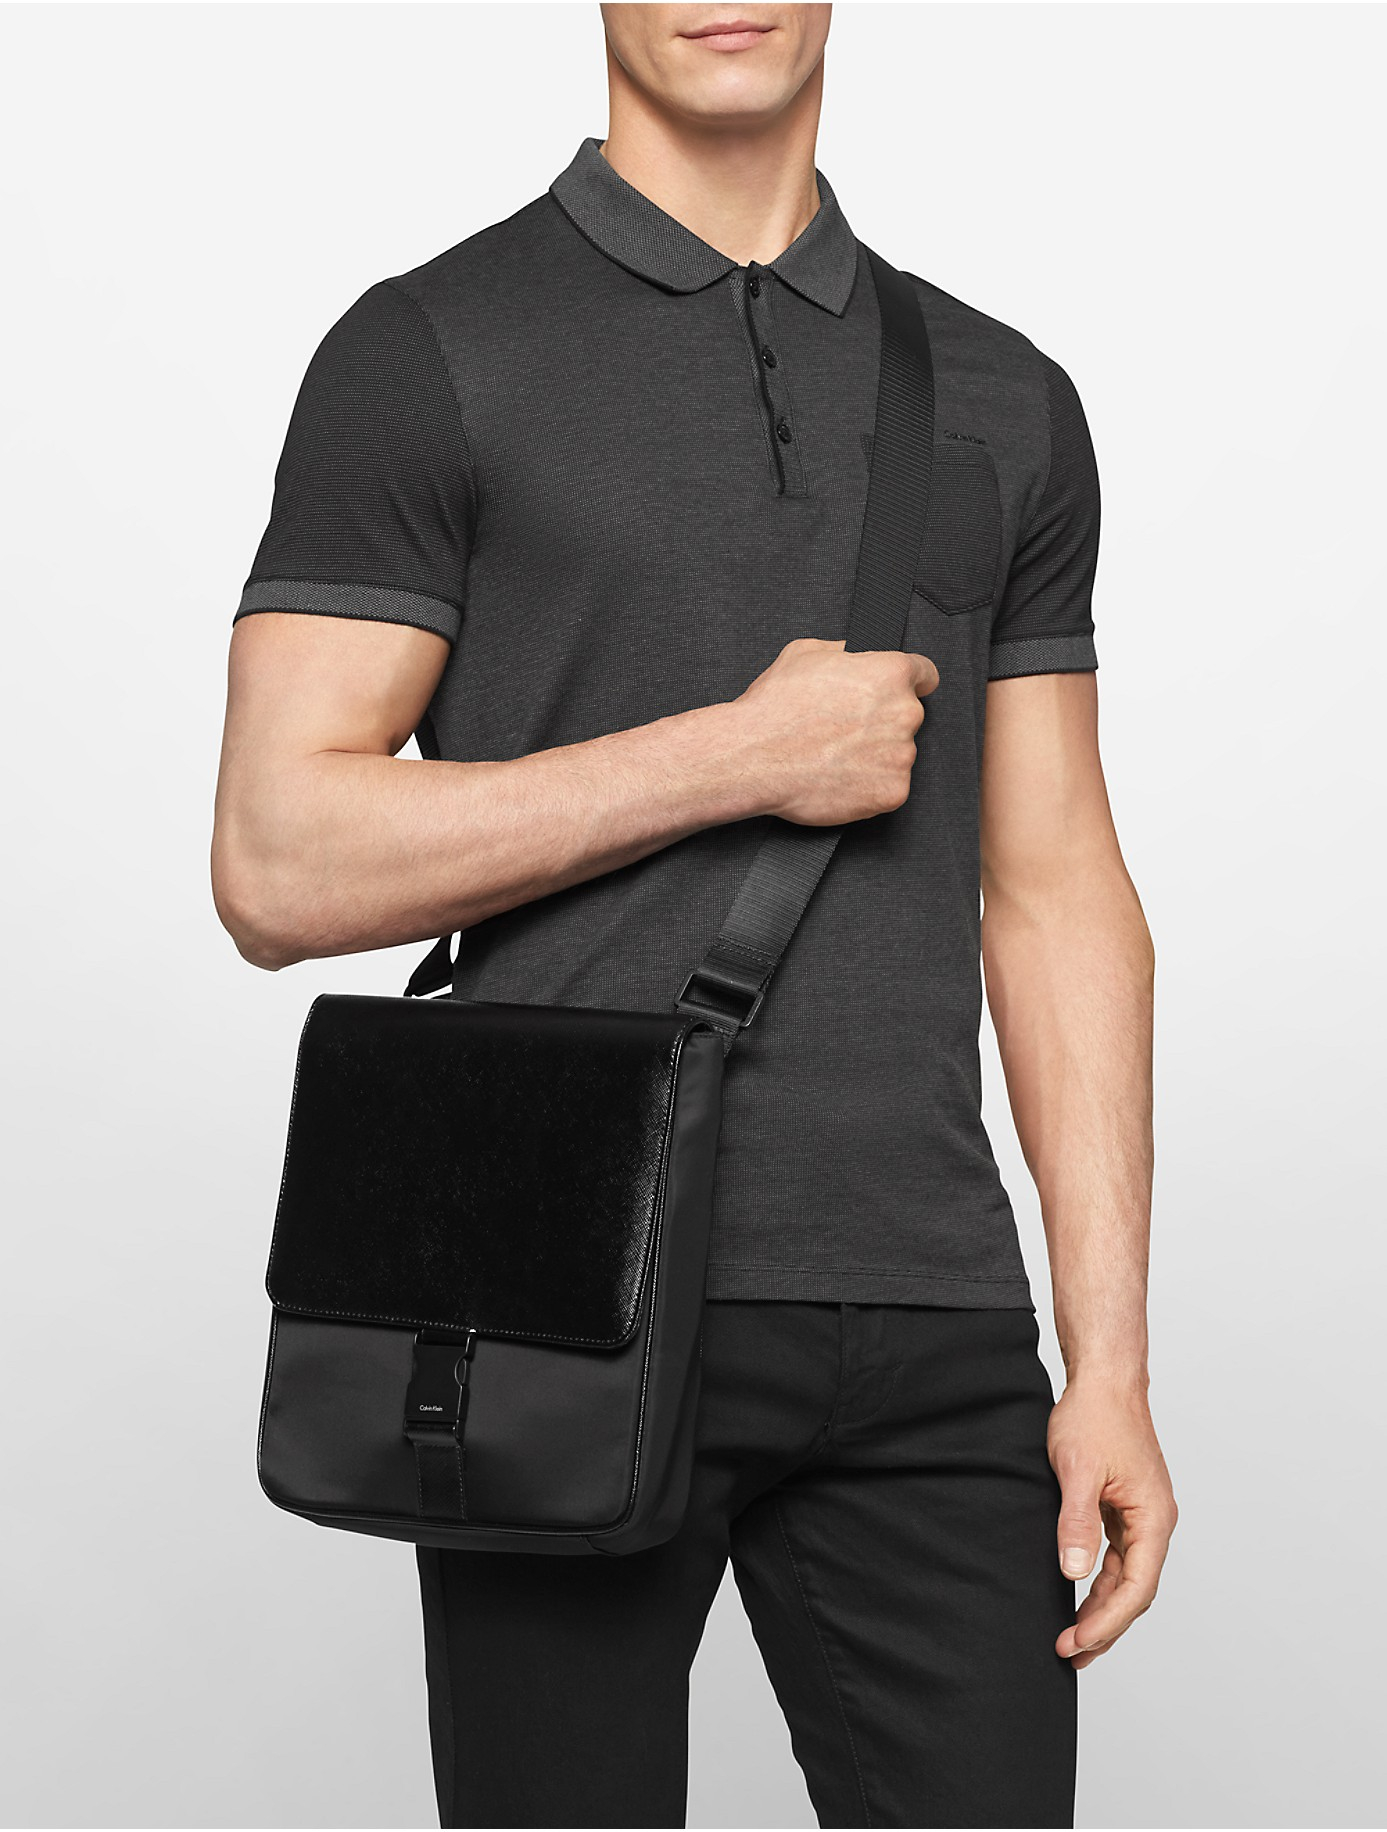 Lyst - Calvin klein White Label Saffiano Leather + Nylon City Bag in Black